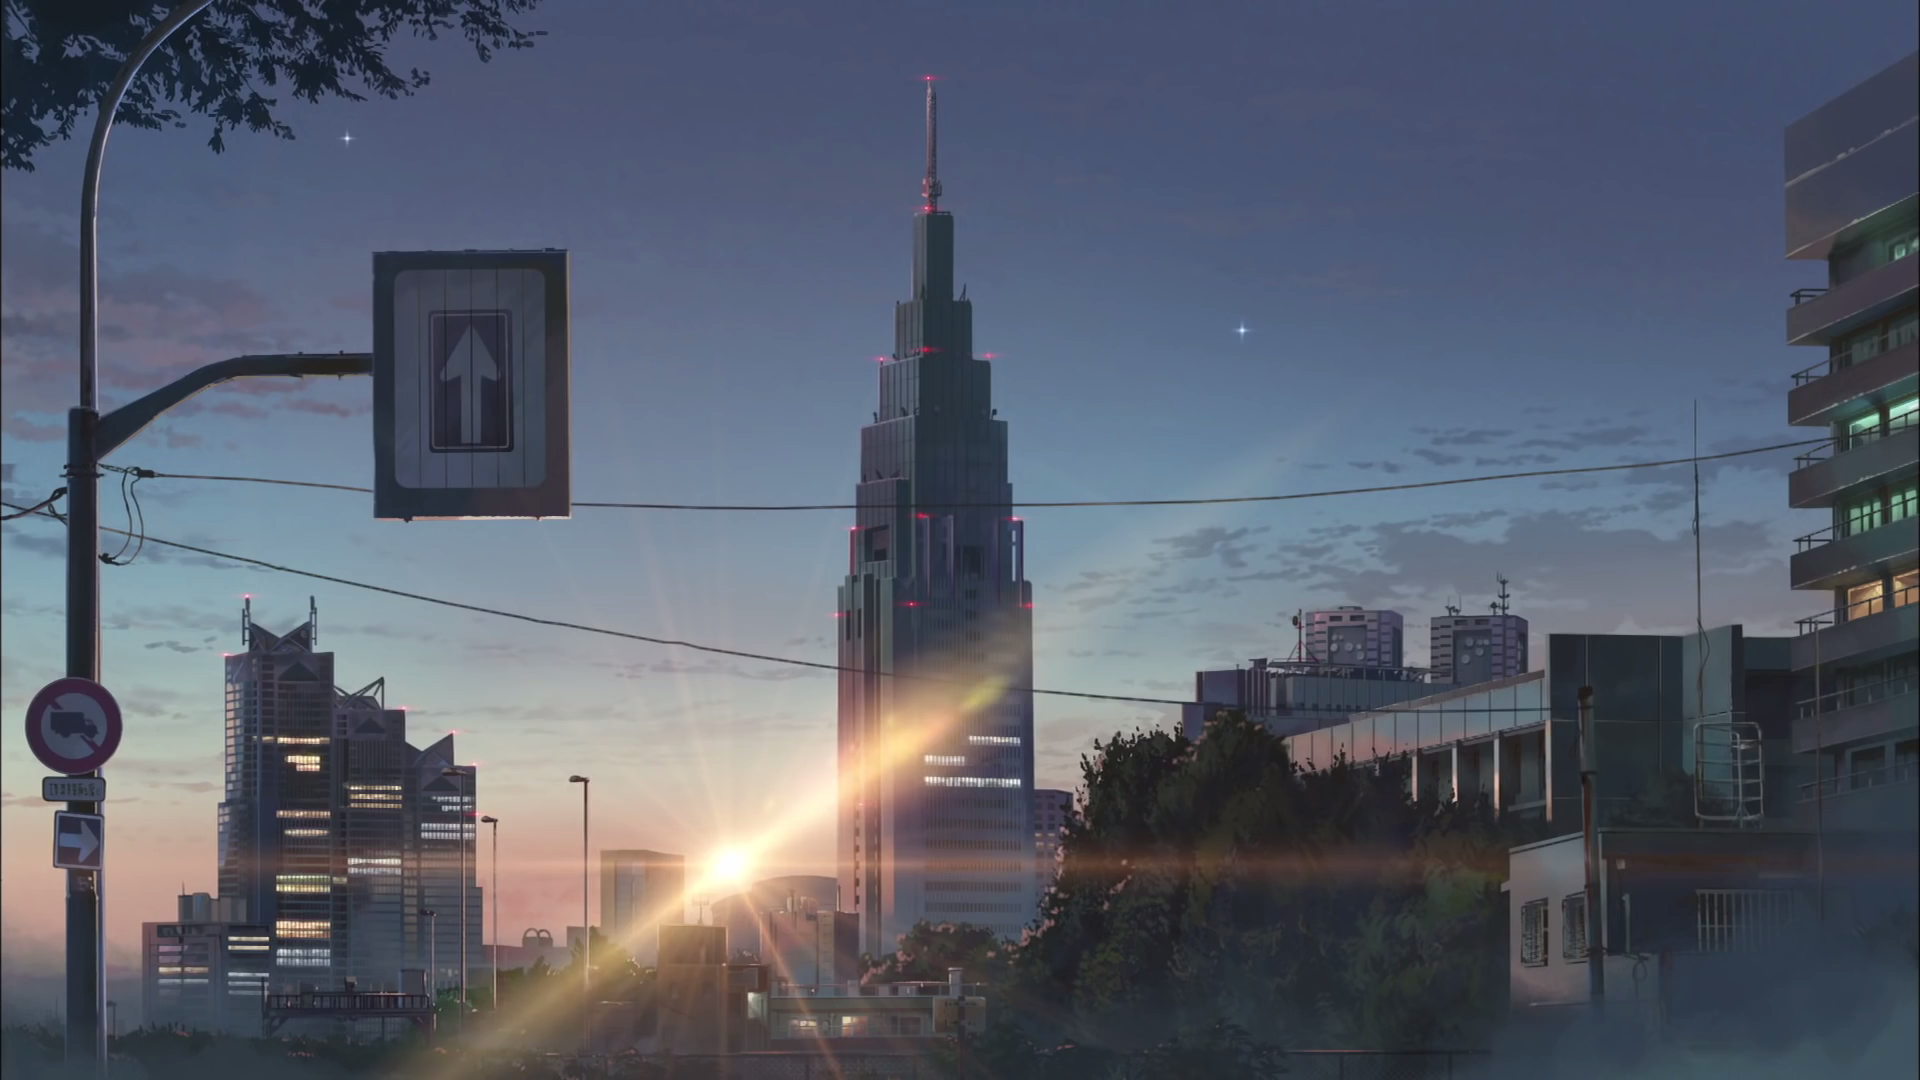 #signs, #anime, #Makoto Shinkai, #flares, #city, #sunset